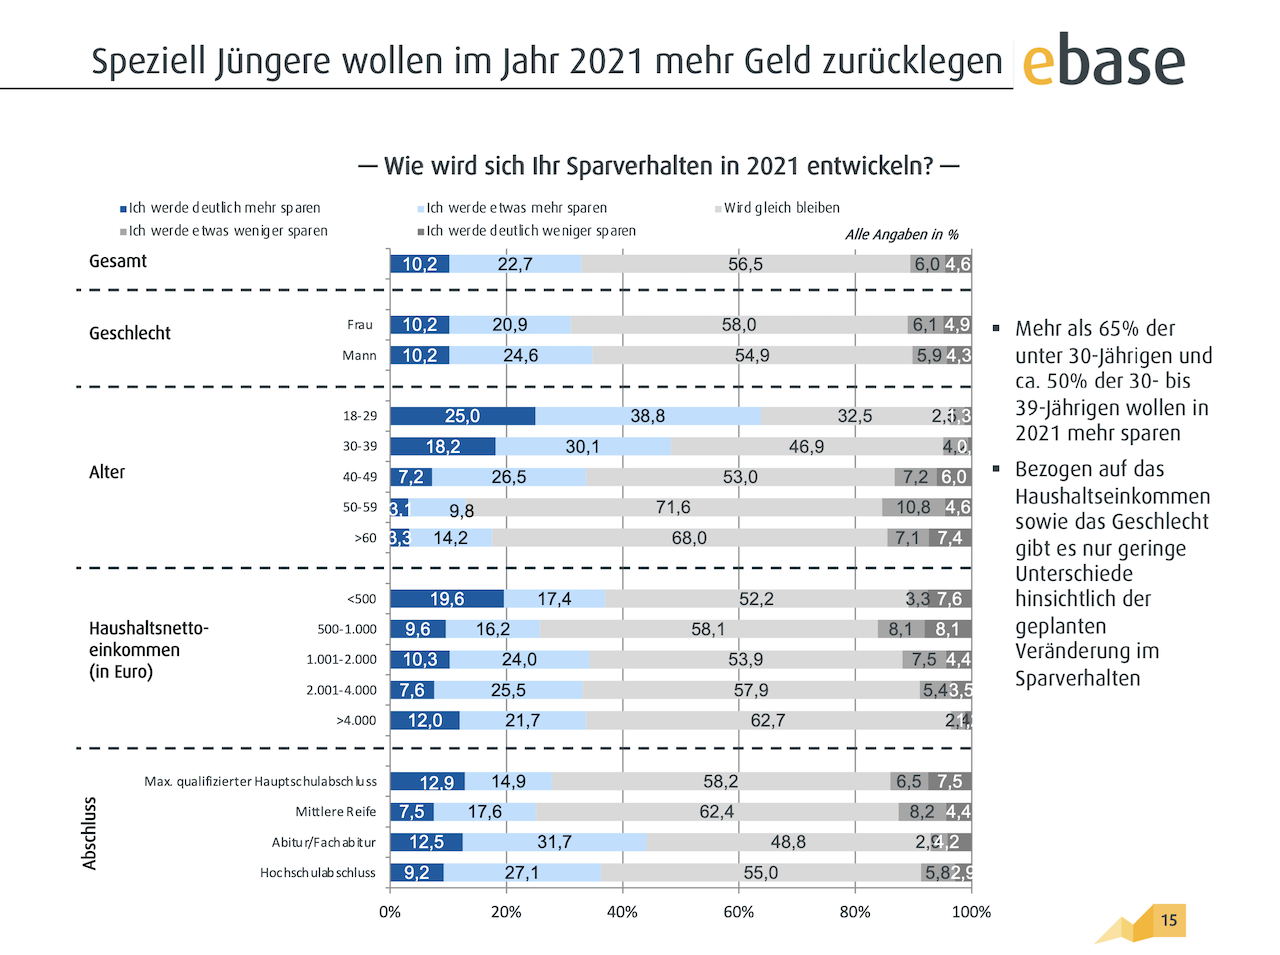 Deutsche Wollen Sich 21 Mehr Um Finanzen Kummern Finanznachrichten Auf Cash Online